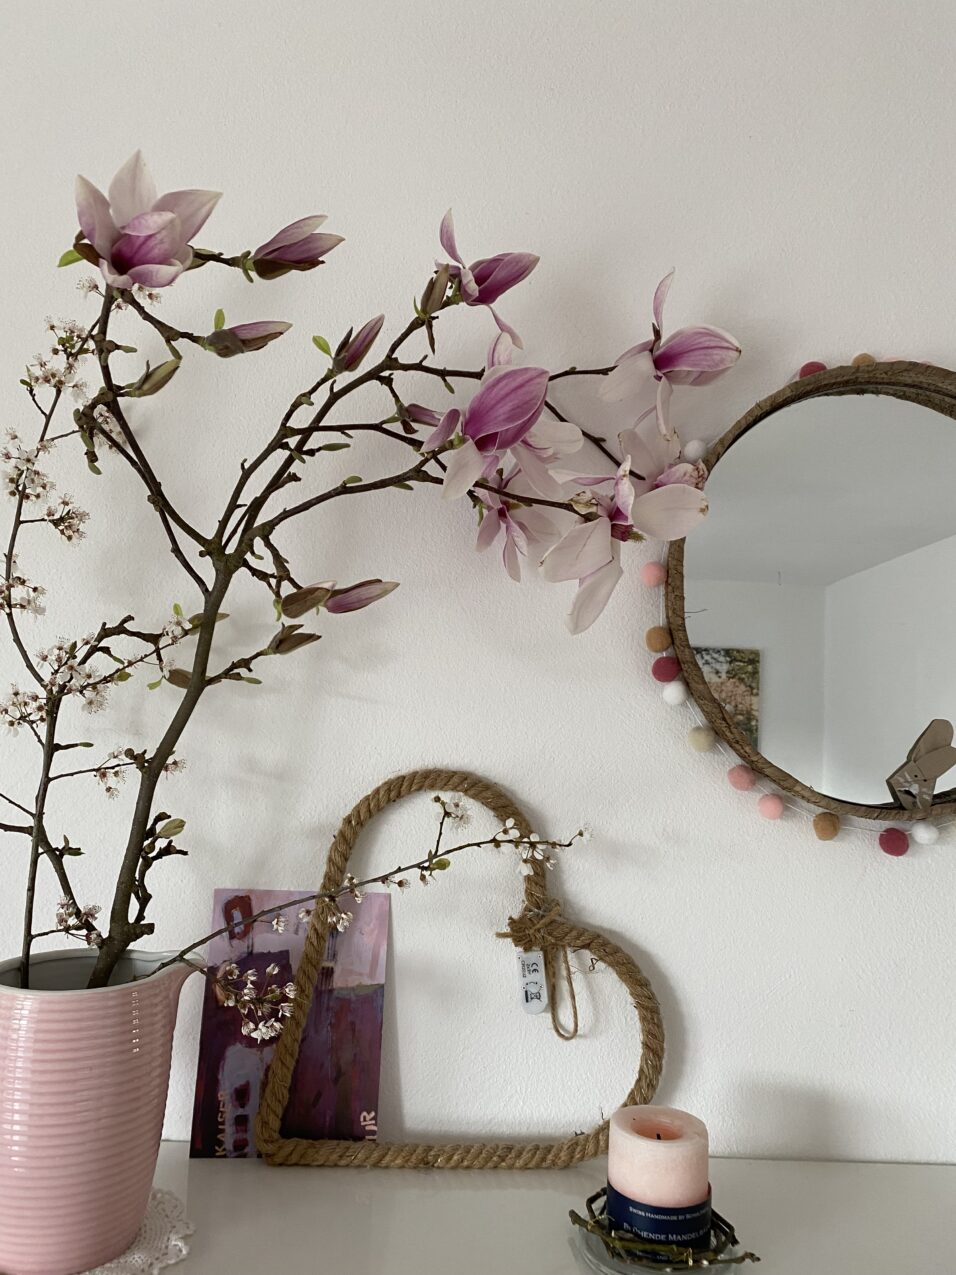 Aufgeblühte Magnoloen in einer Vase, vor der Wand. daneben steht noch weitere Deko und ein runter Spiegel hängt an der Wand